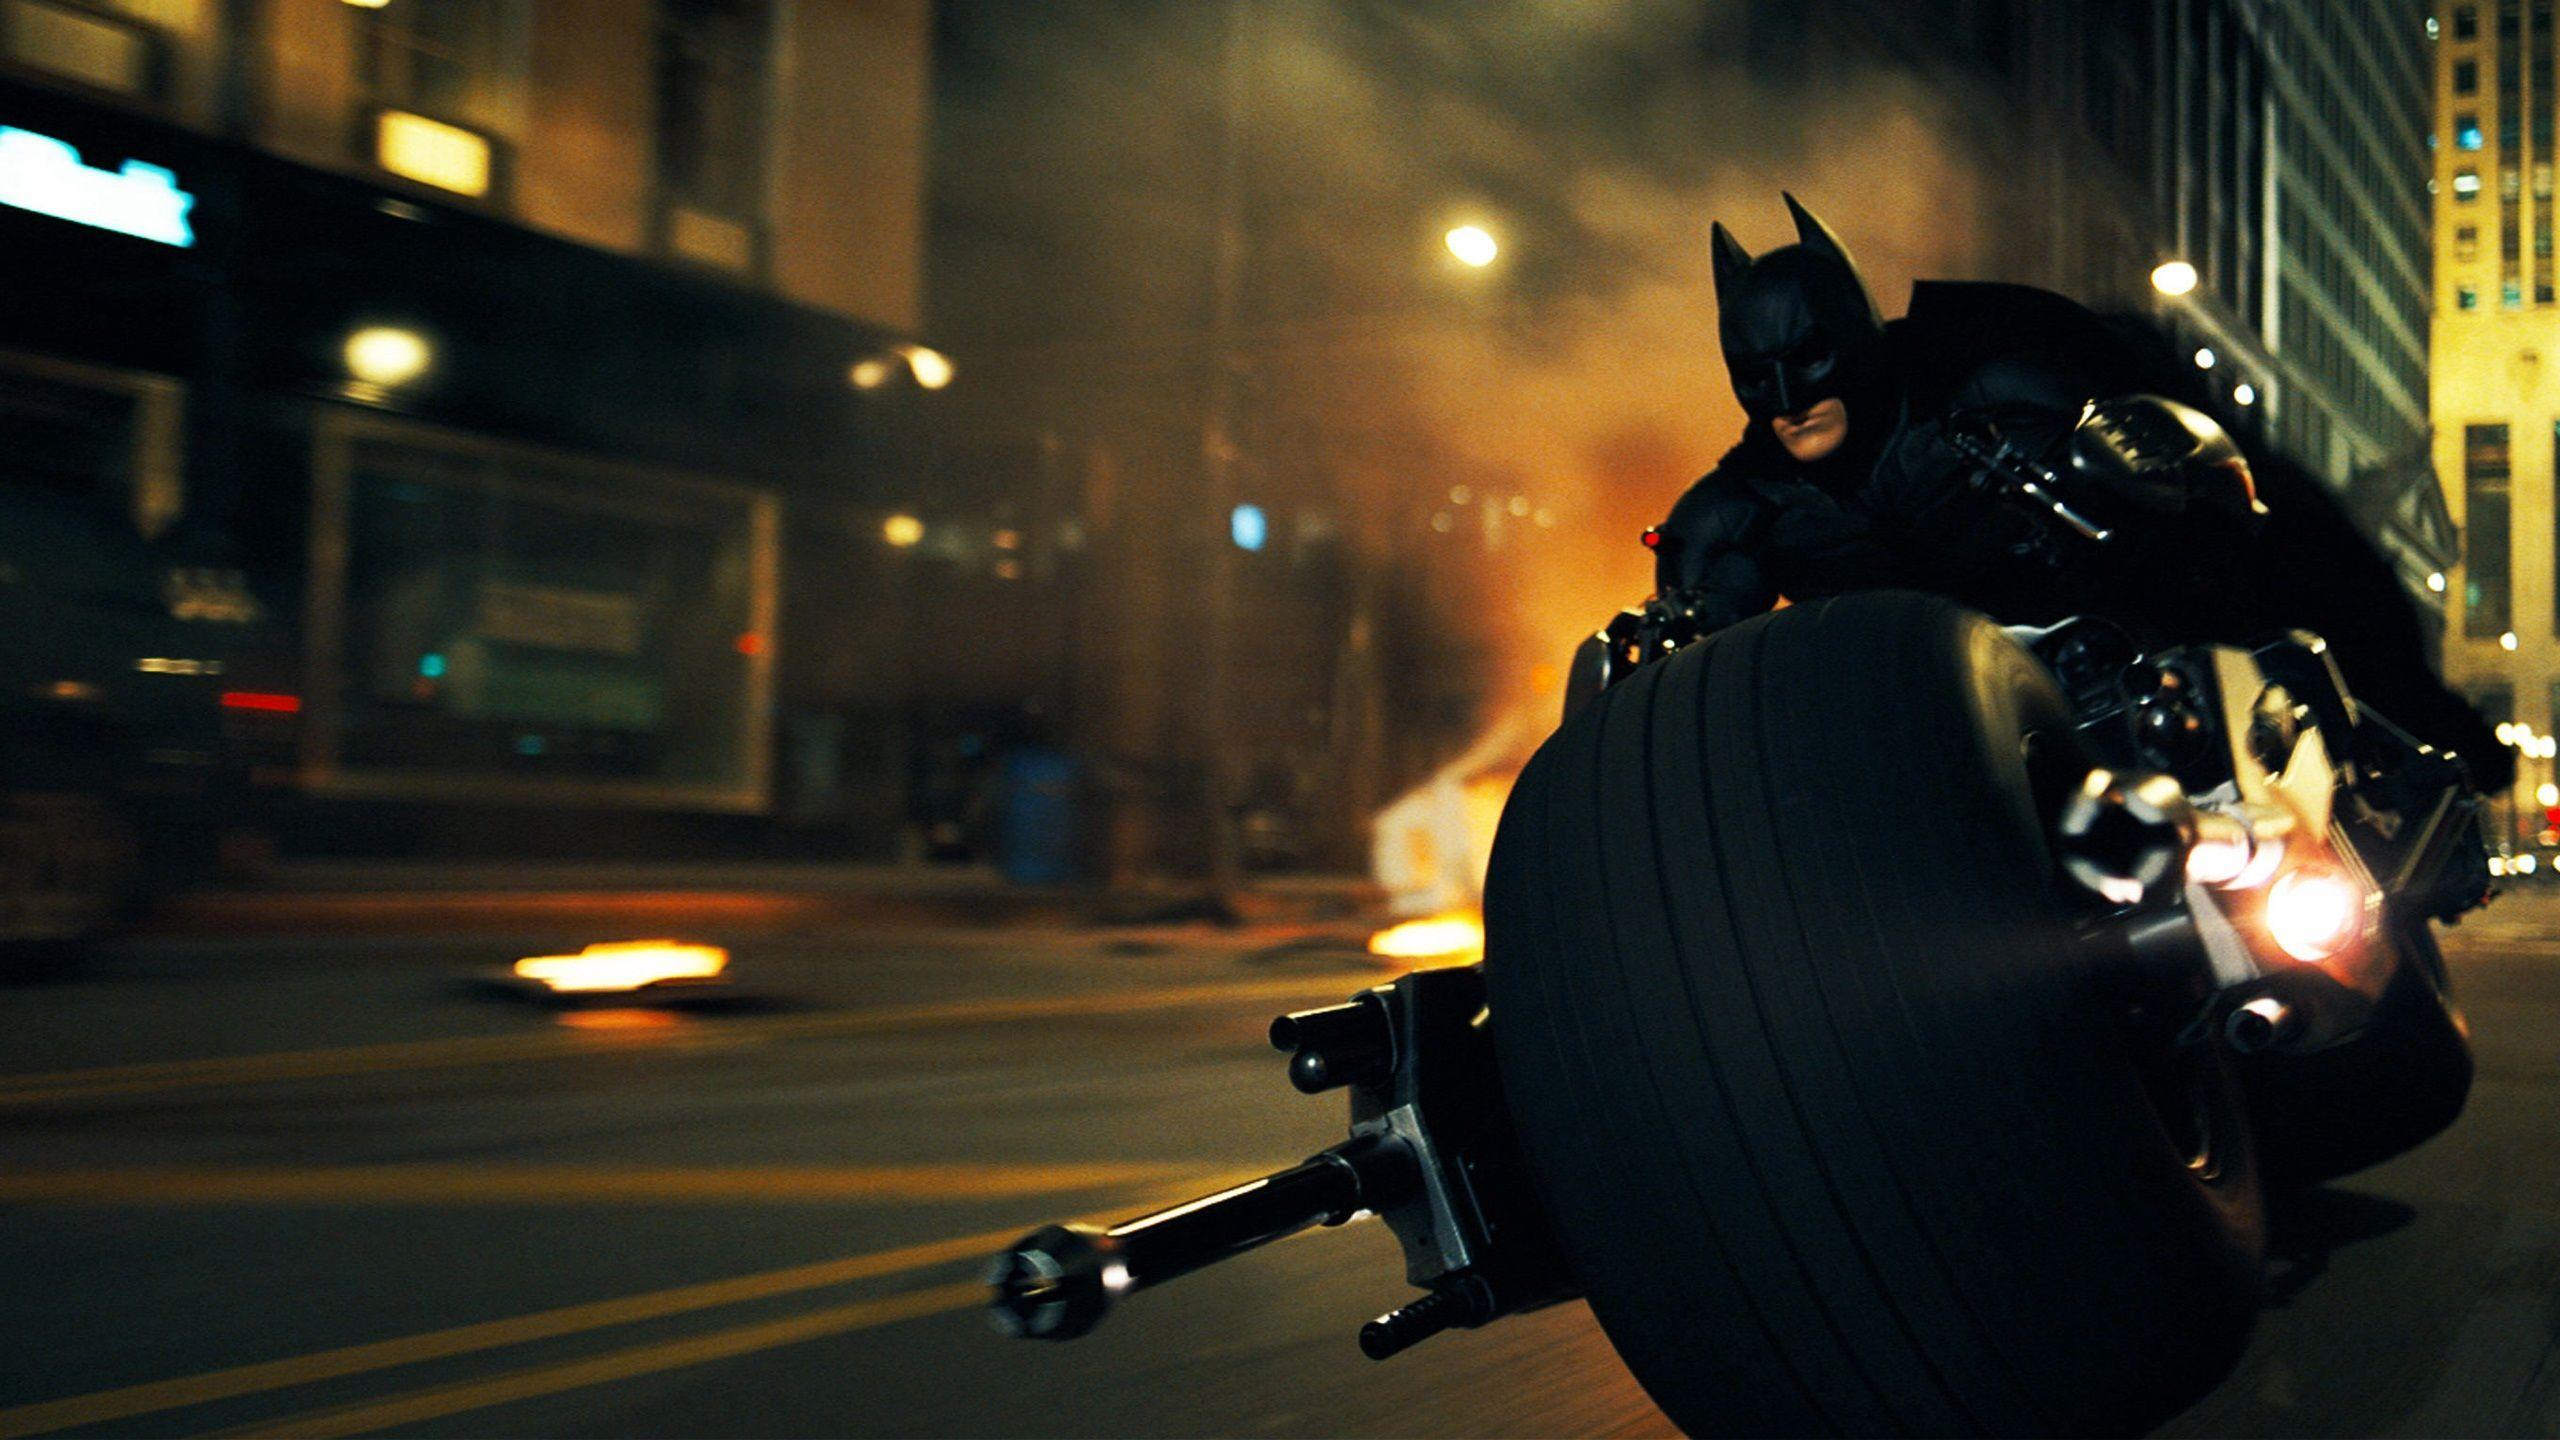 Batman in Dark Knight Rises Wallpaper